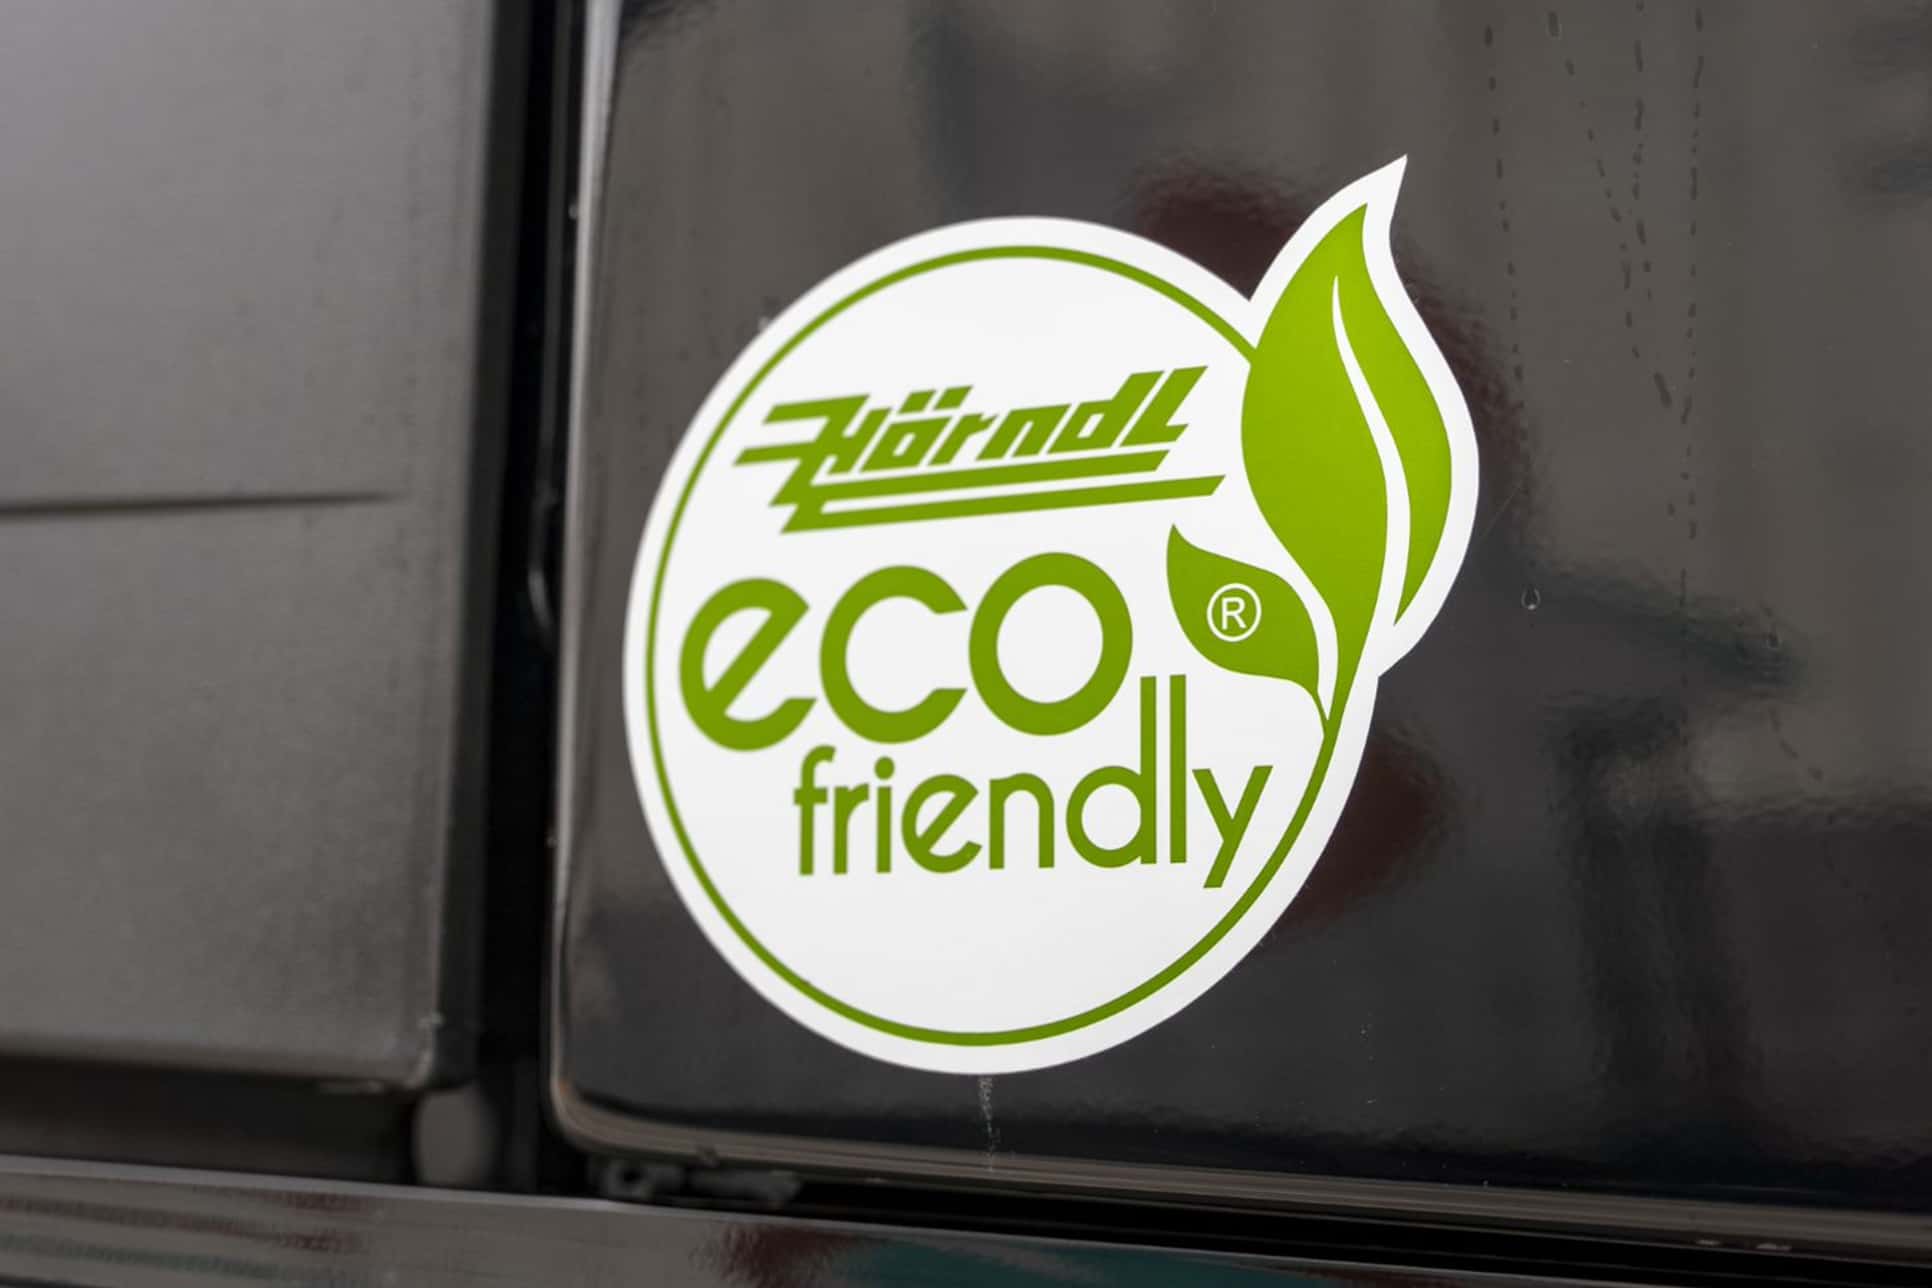 Hörndl eco friendly